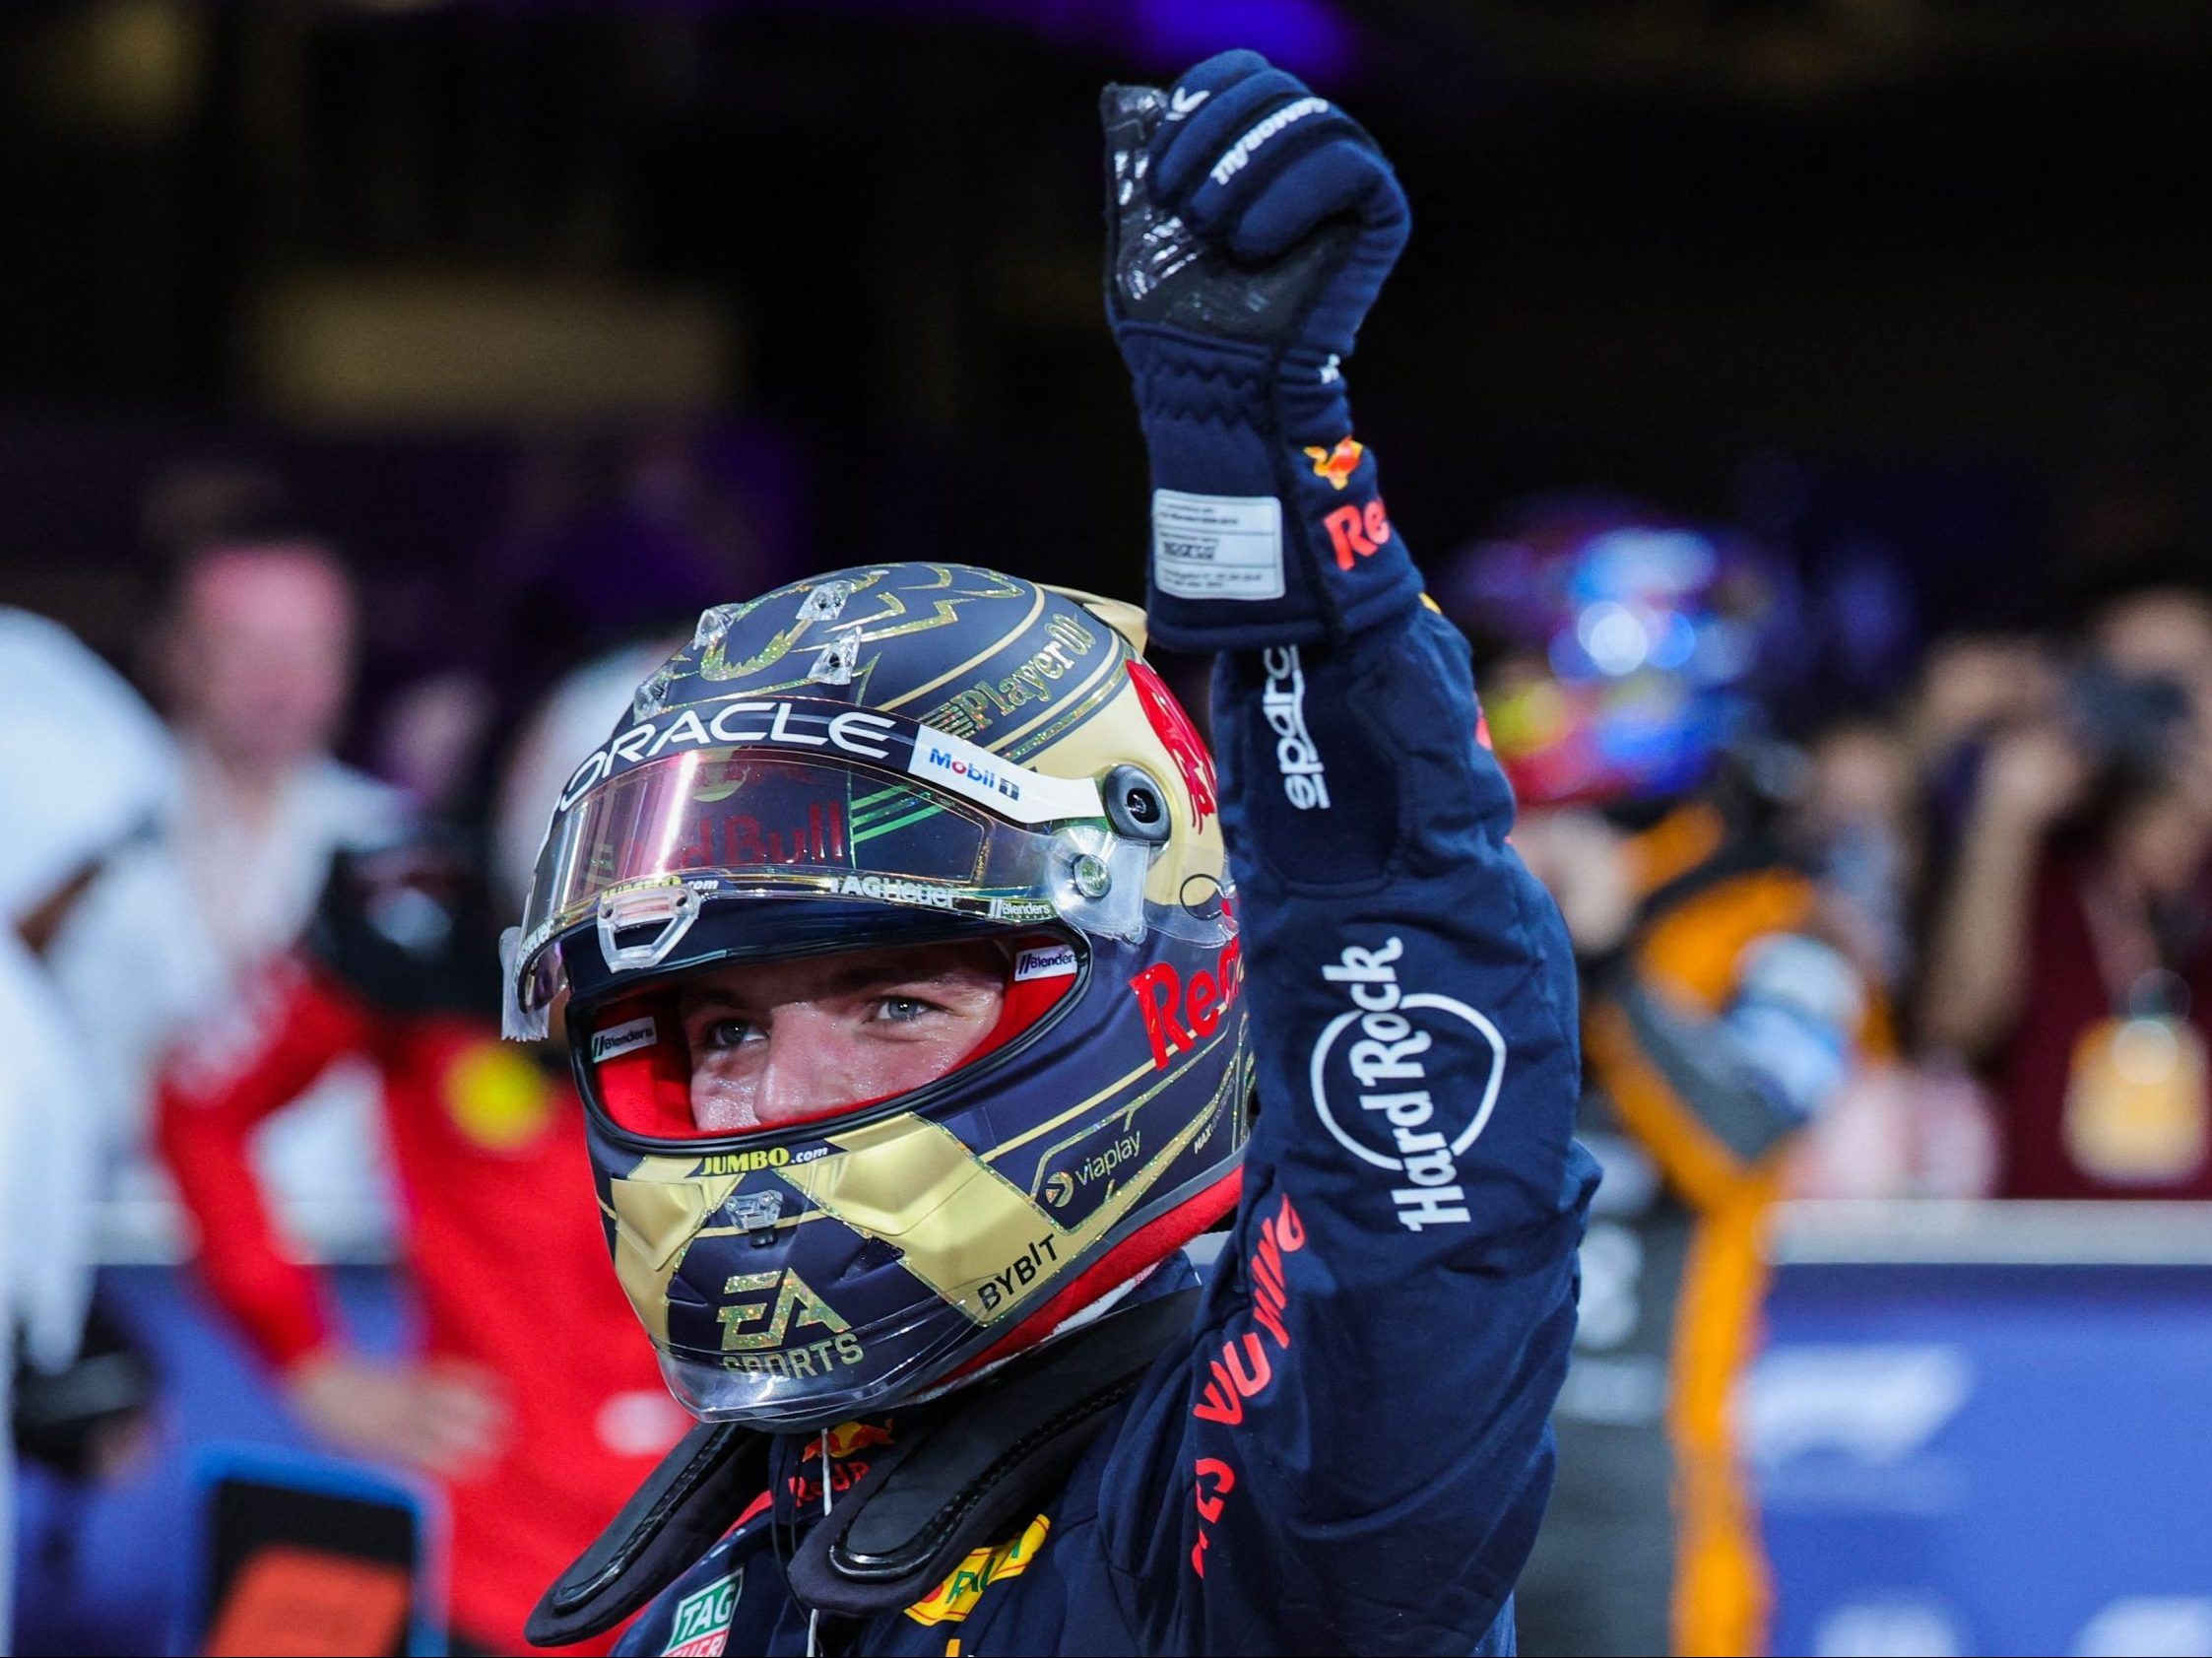 Verstappen on pole for Abu Dhabi's F1 season finale